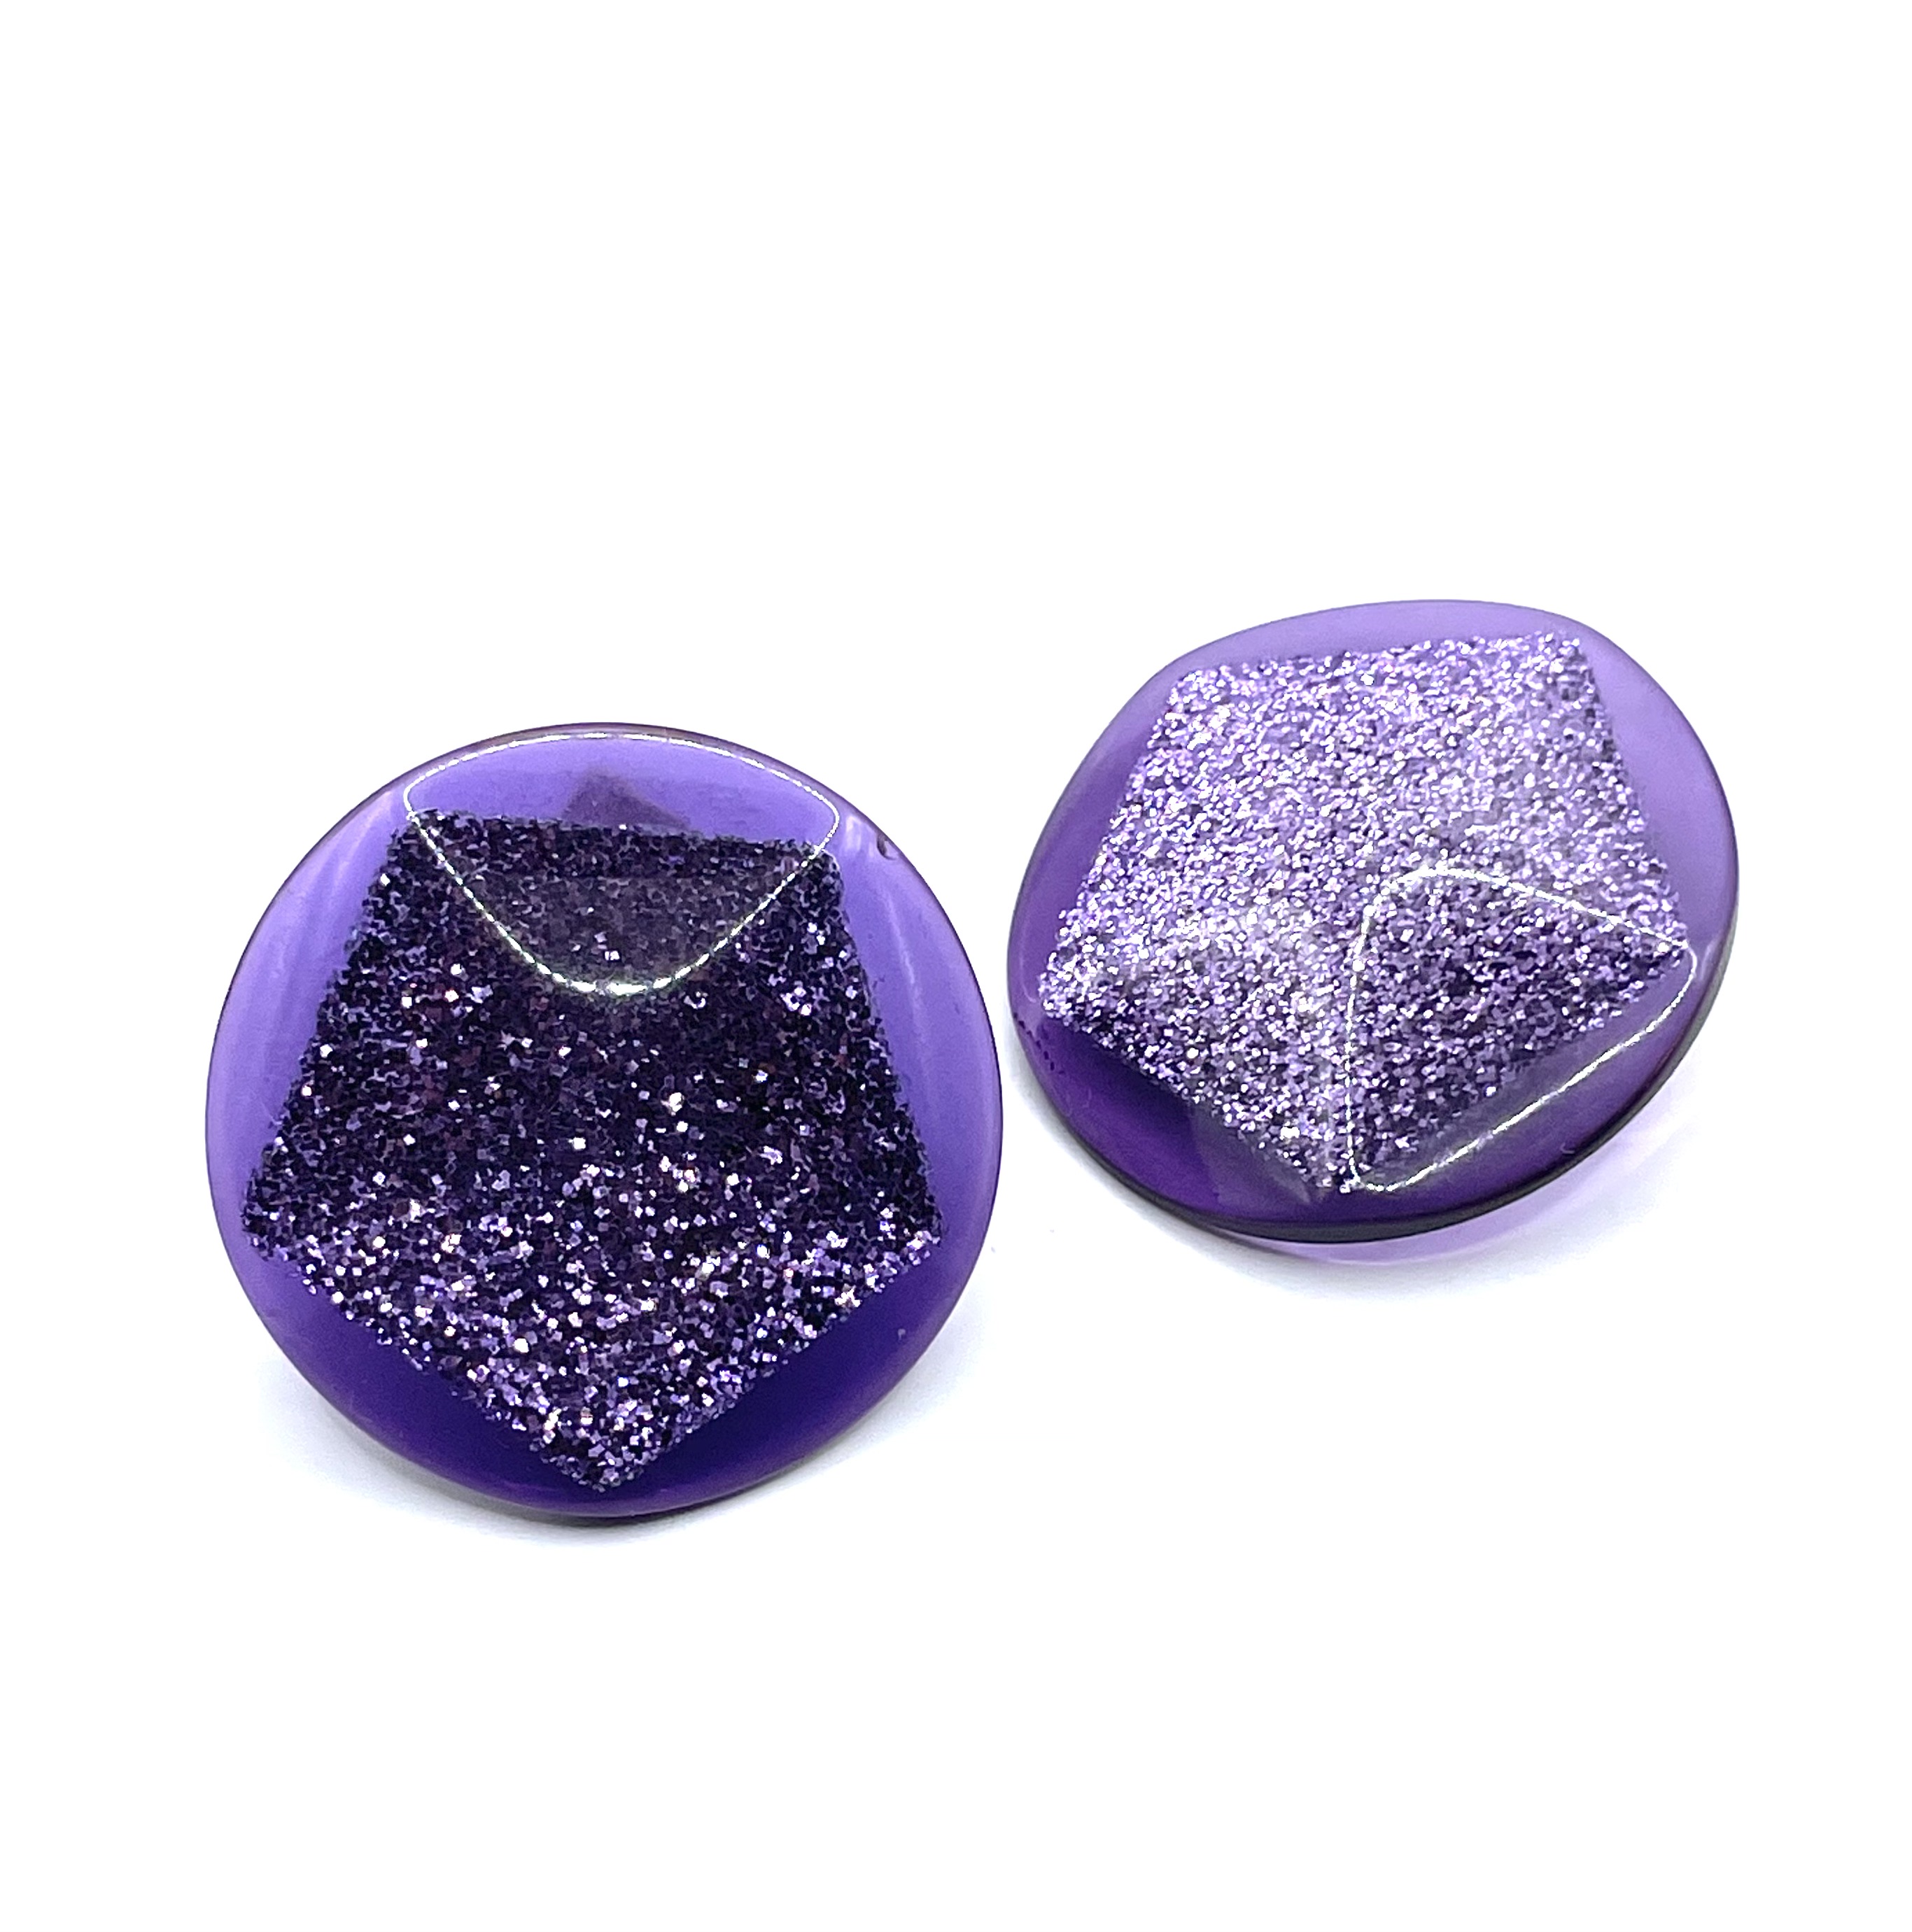 purple glitter earrings